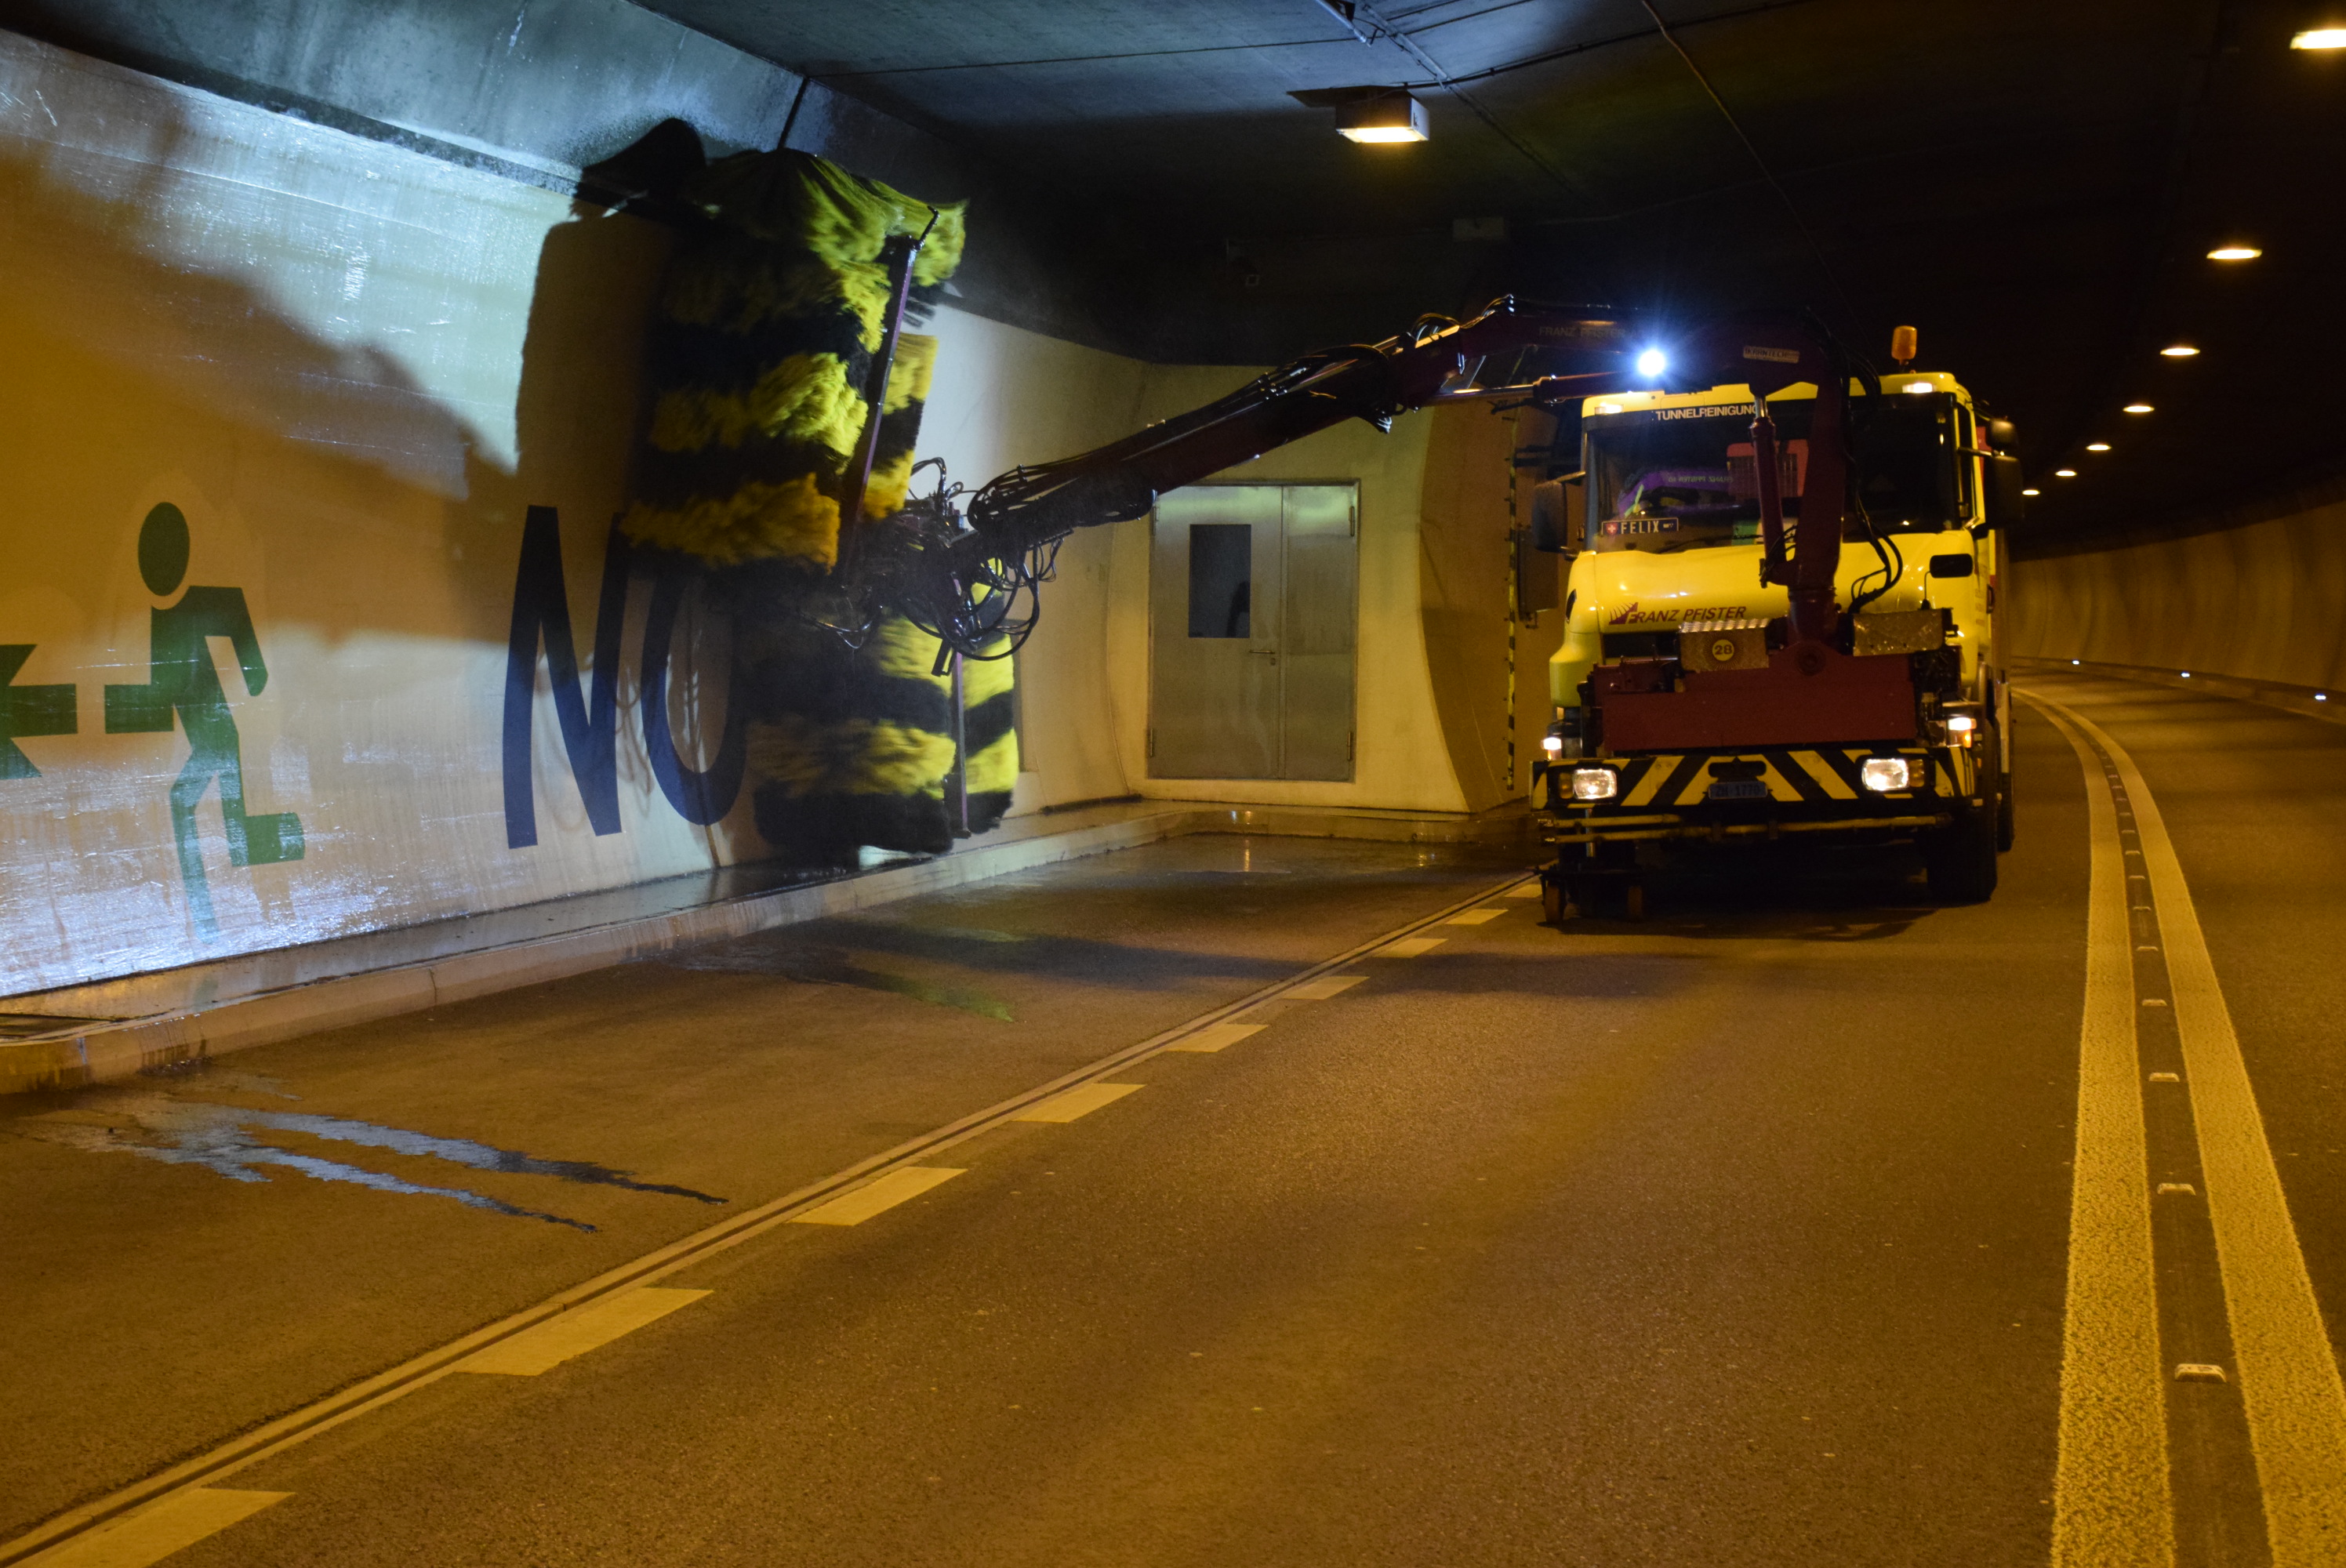 Bildlegende: Zu den Unterhaltsarbeiten gehört auch die Reinigung des Tunnels. Amt für Betrieb Nationalstrassen